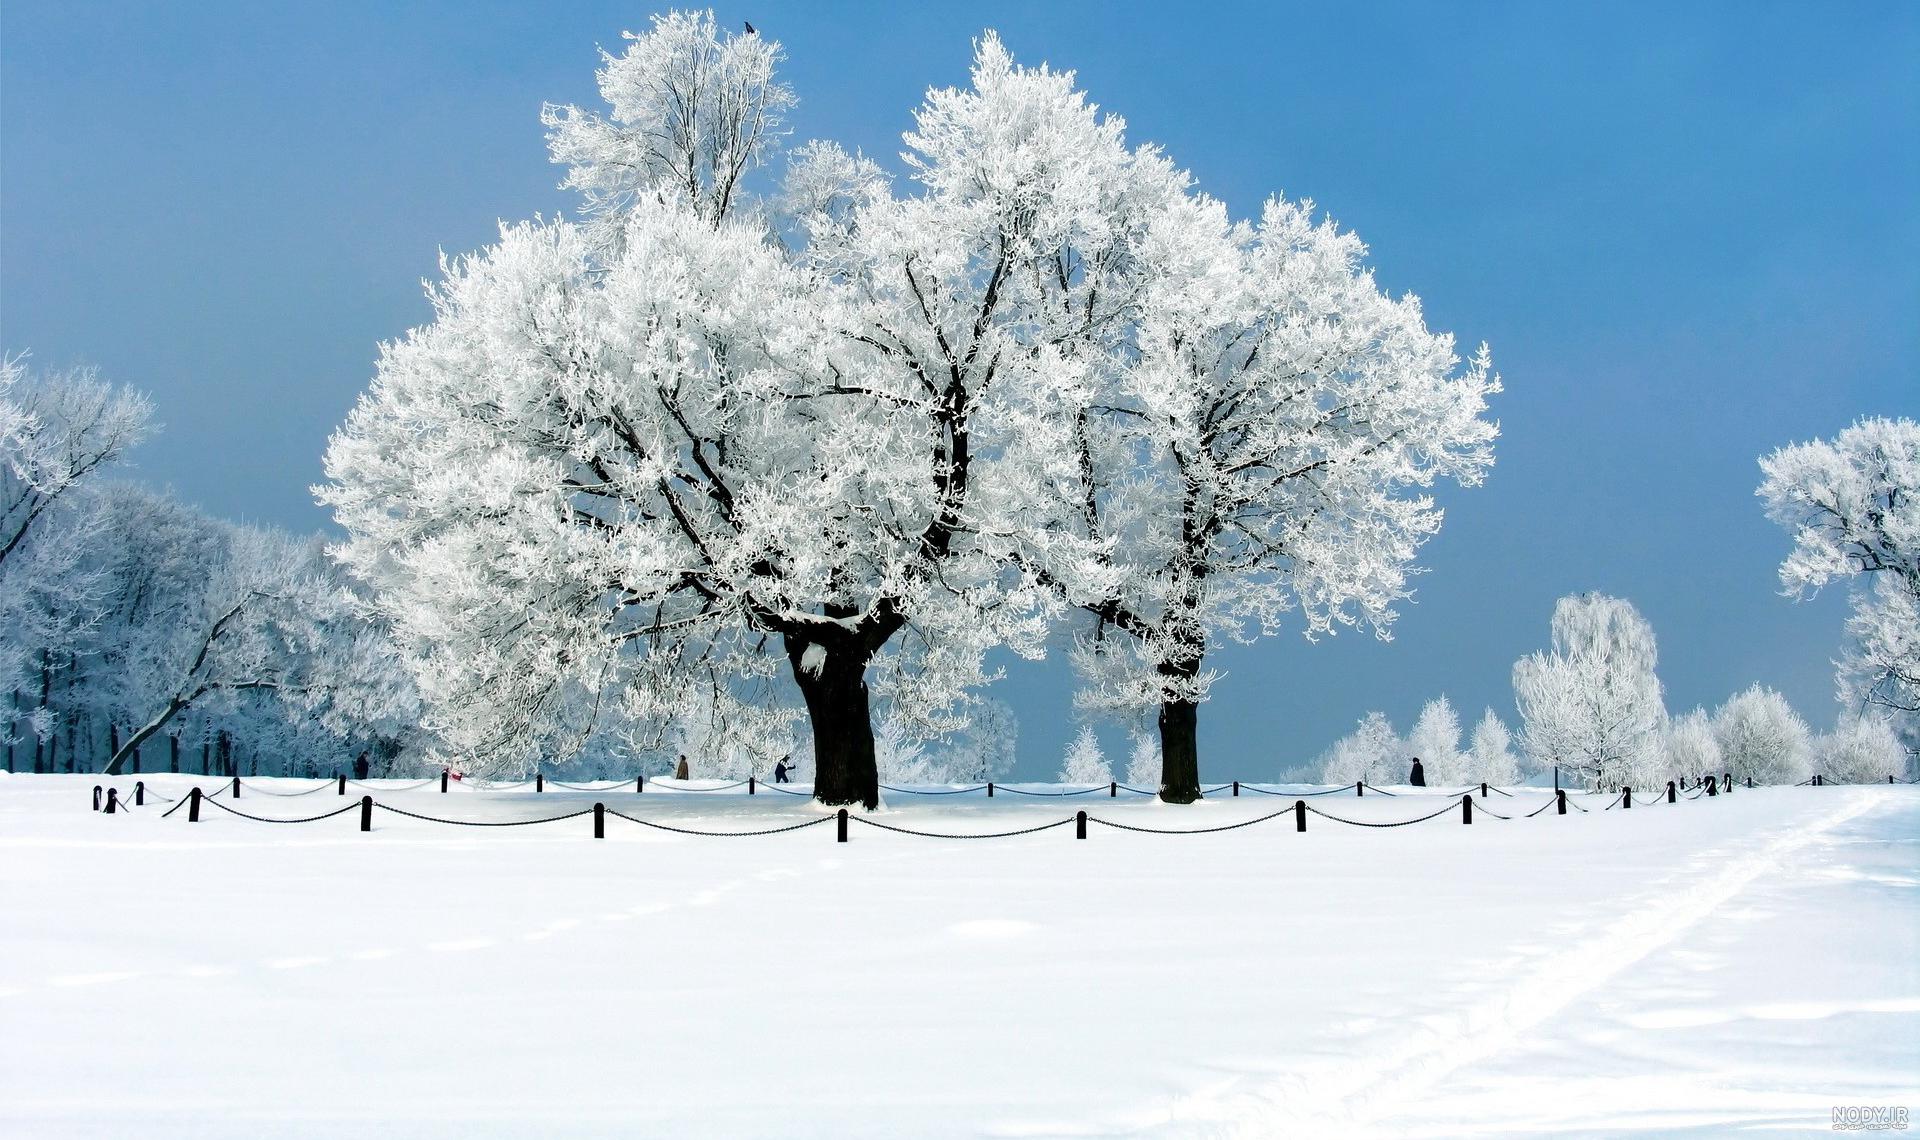 عکس زمستان با کیفیت بالا